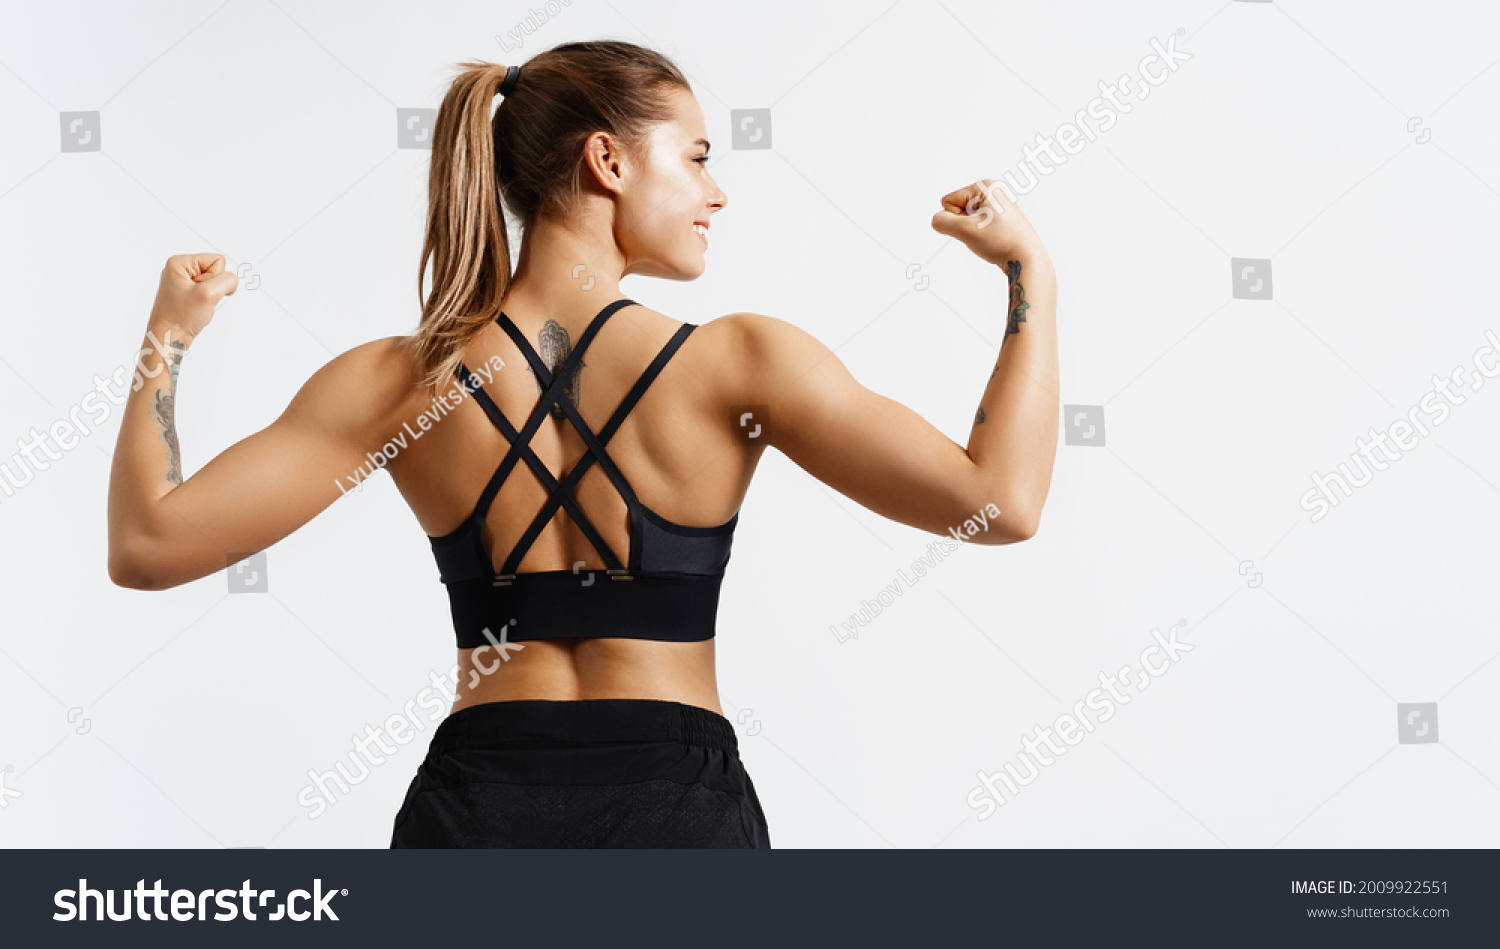 daniel keyworth add photo muscle girl flexing biceps